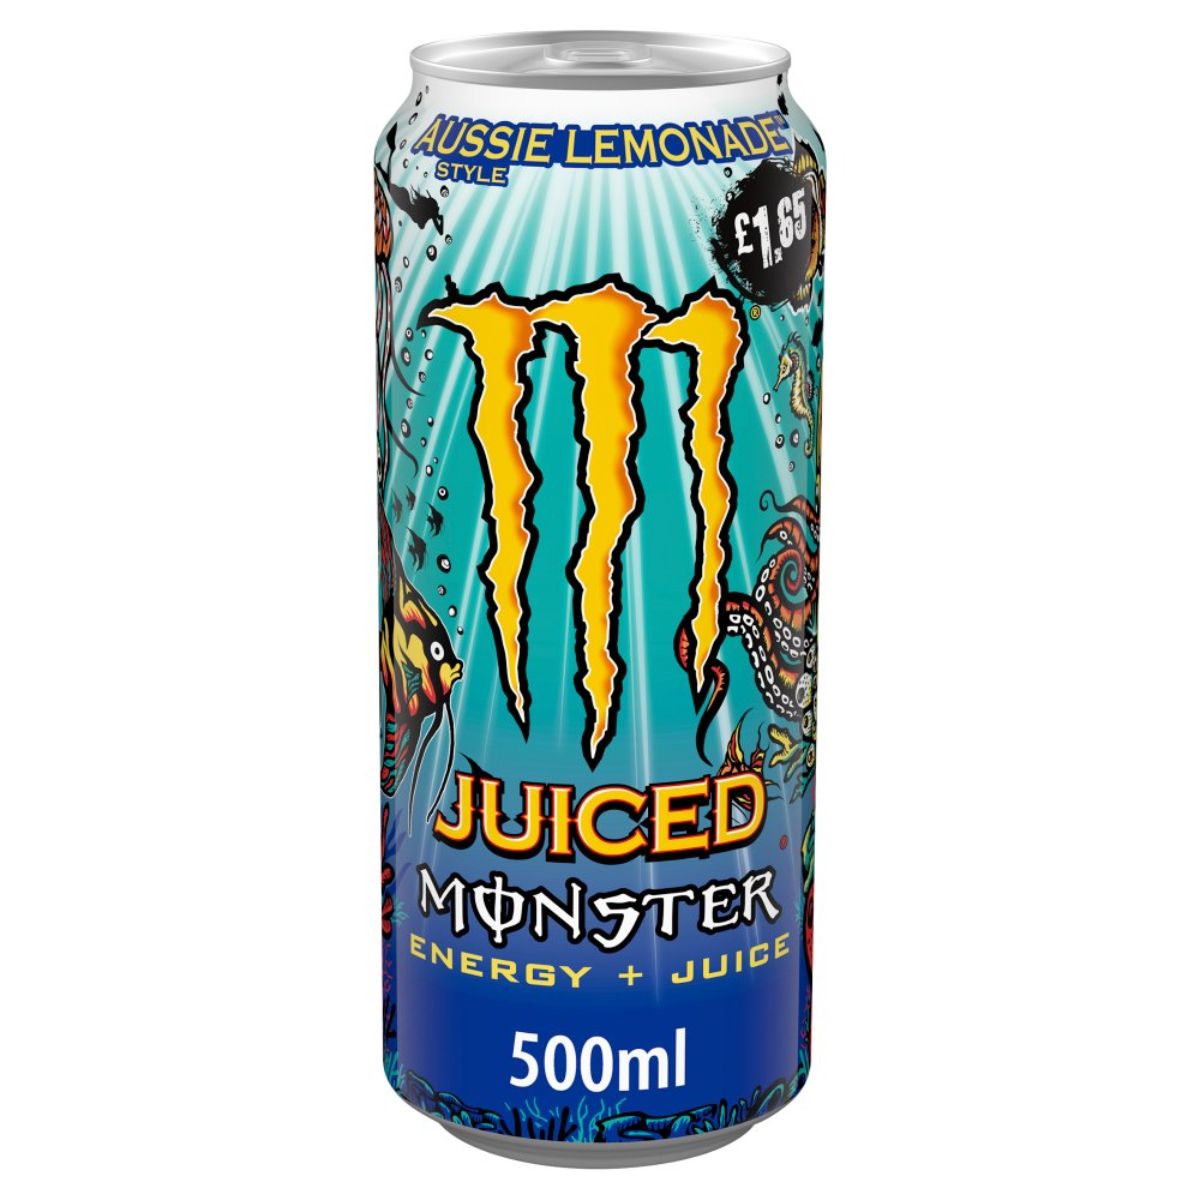 A can of Monster - Aussie Lemonade - 500ml.